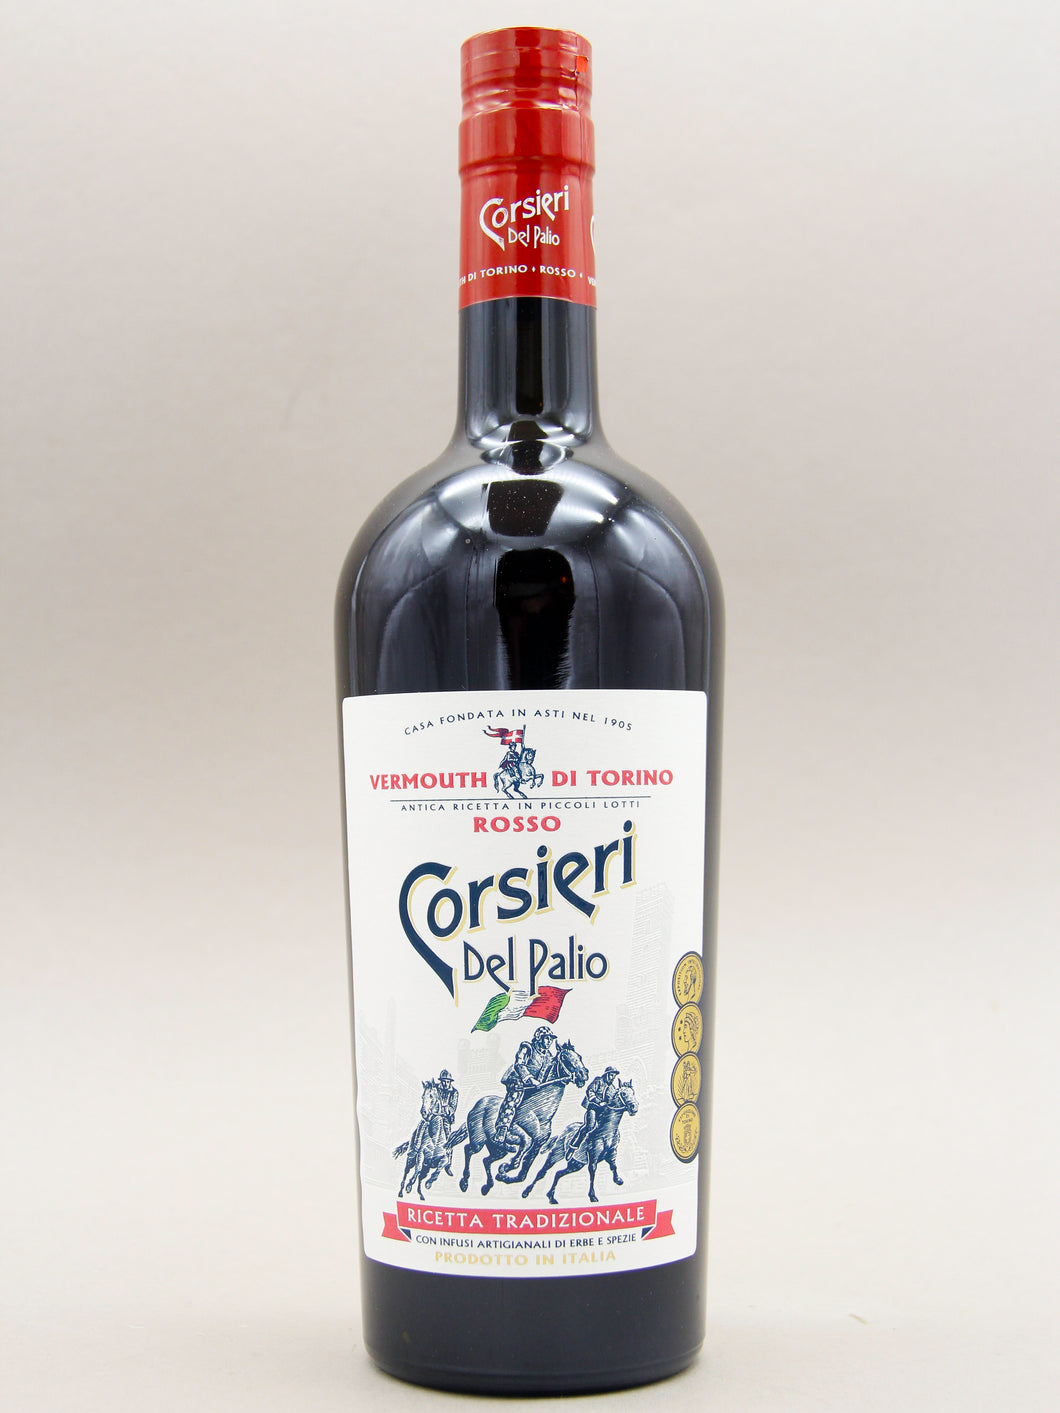 Corsieri Del Palio Rosso, Vermouth (16.5%, 75cl)